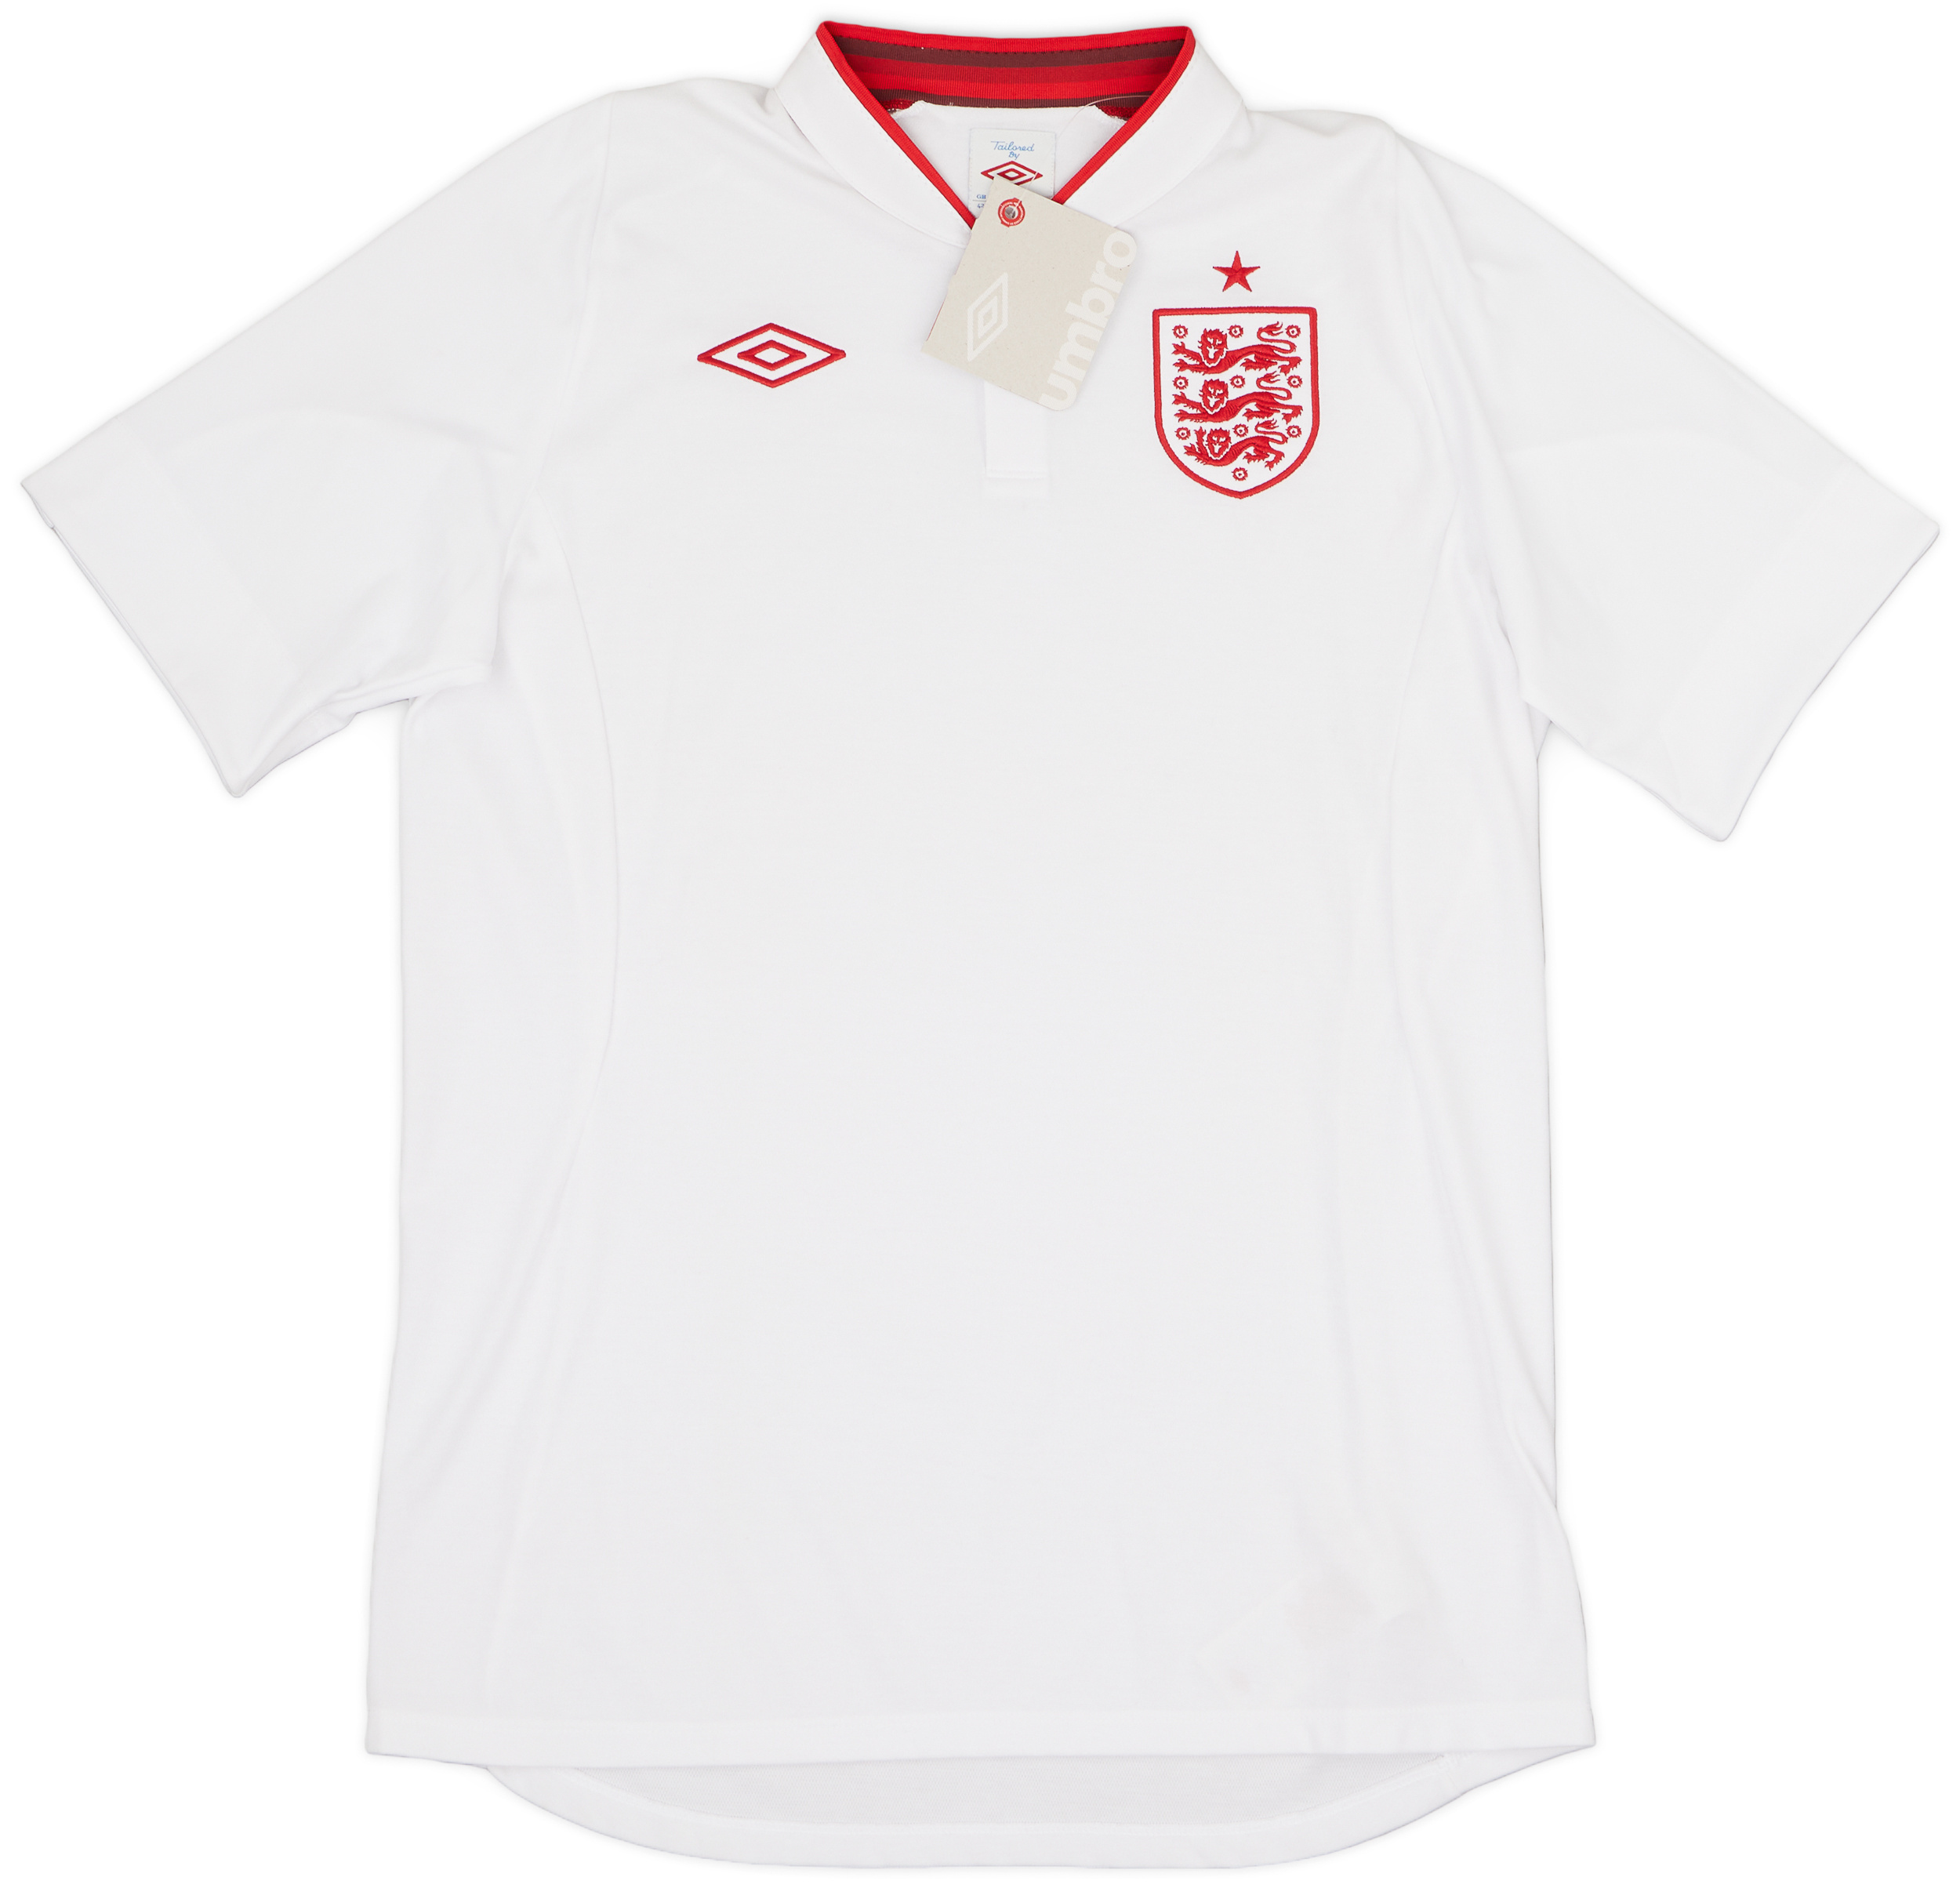 2012-13 England Home Shirt ()